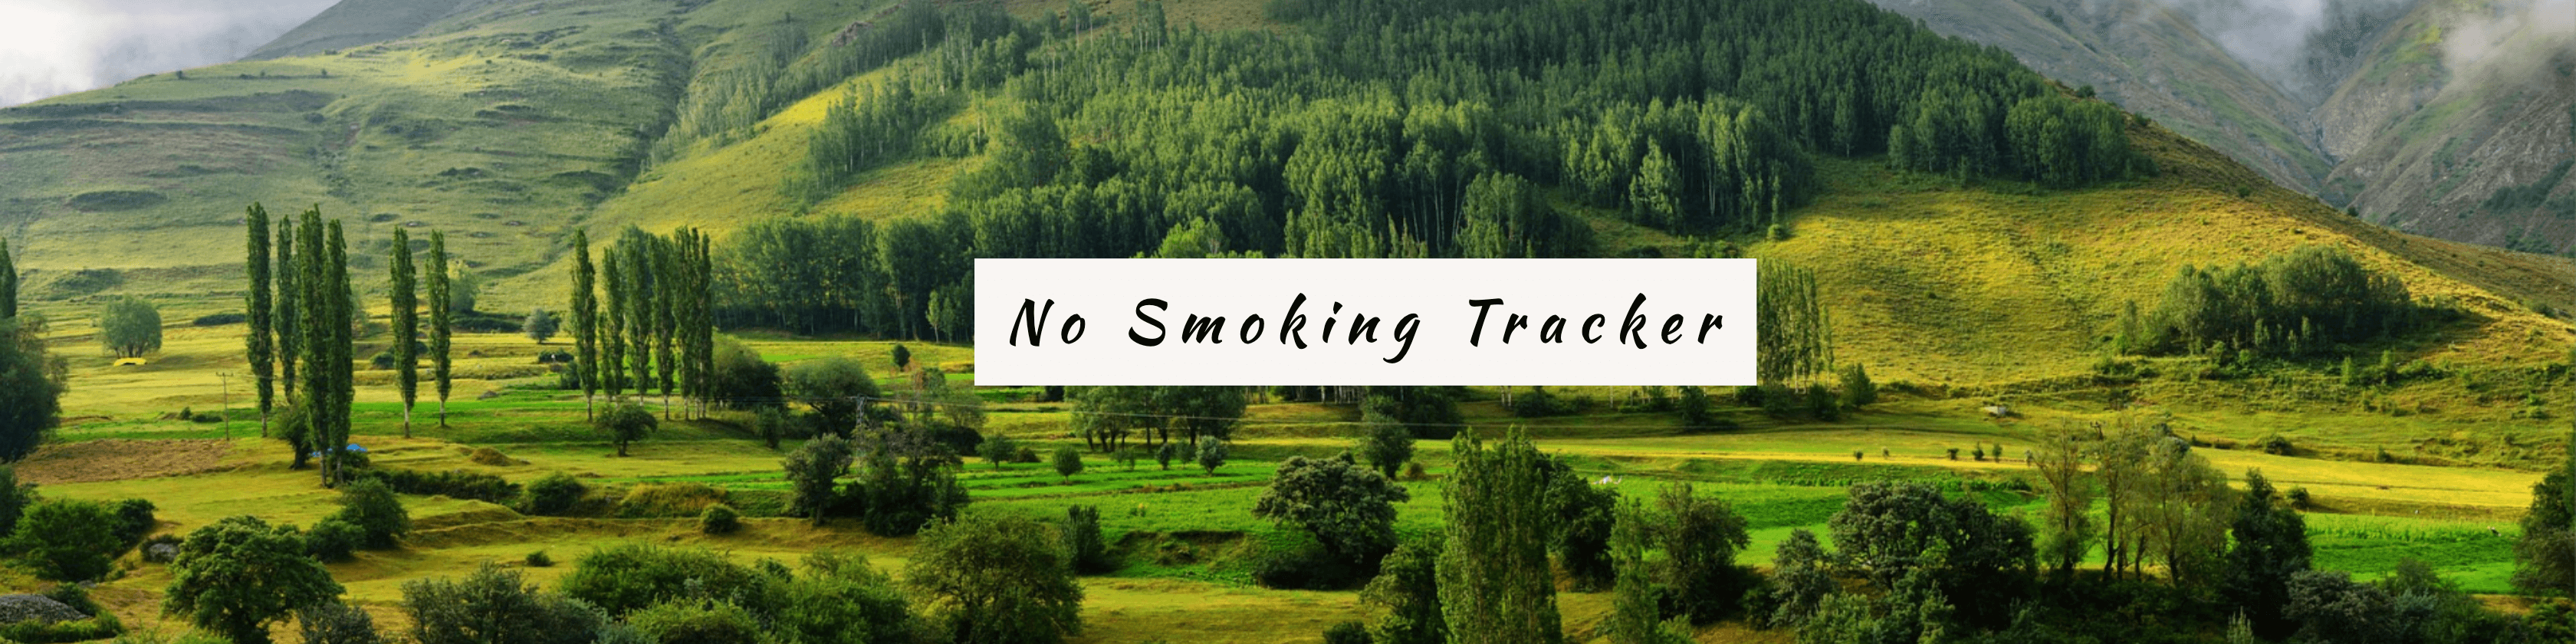 No Smoking Tracker